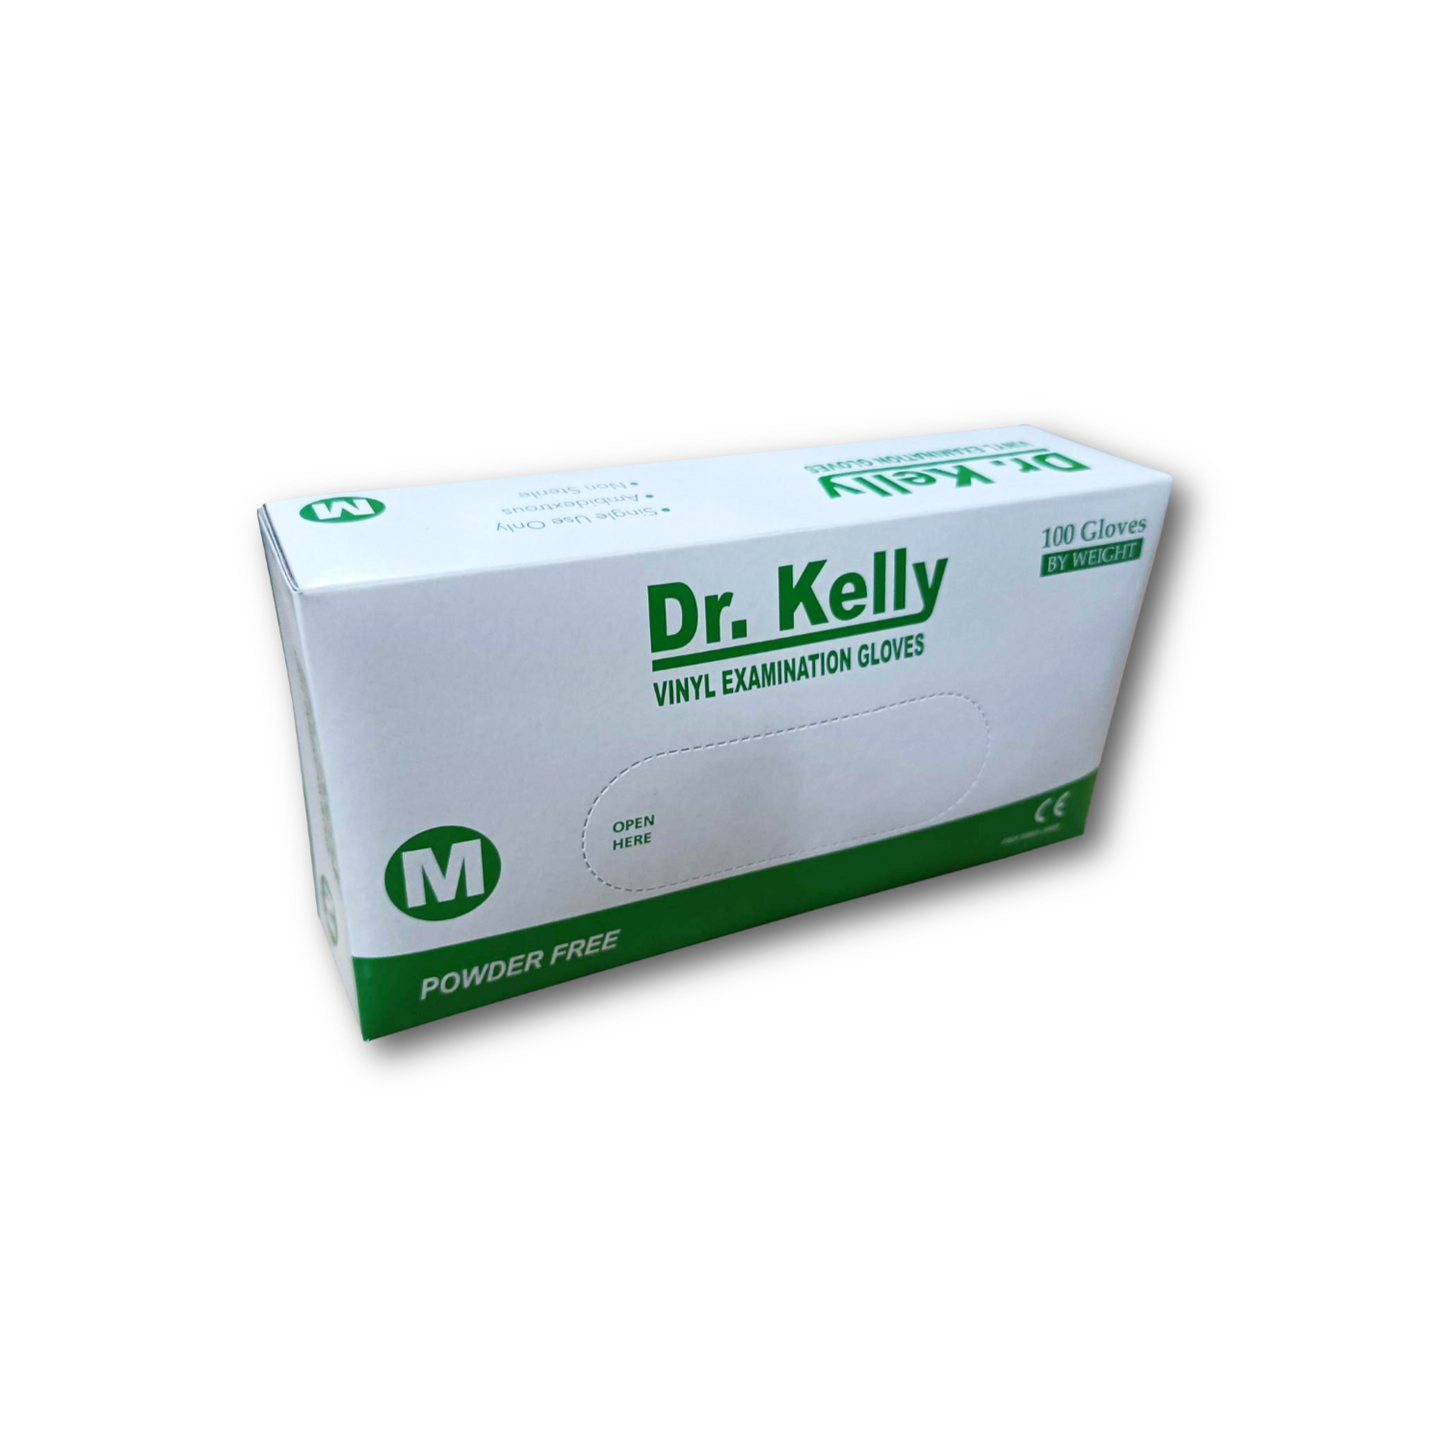 Dr. Kelly Examination Gloves